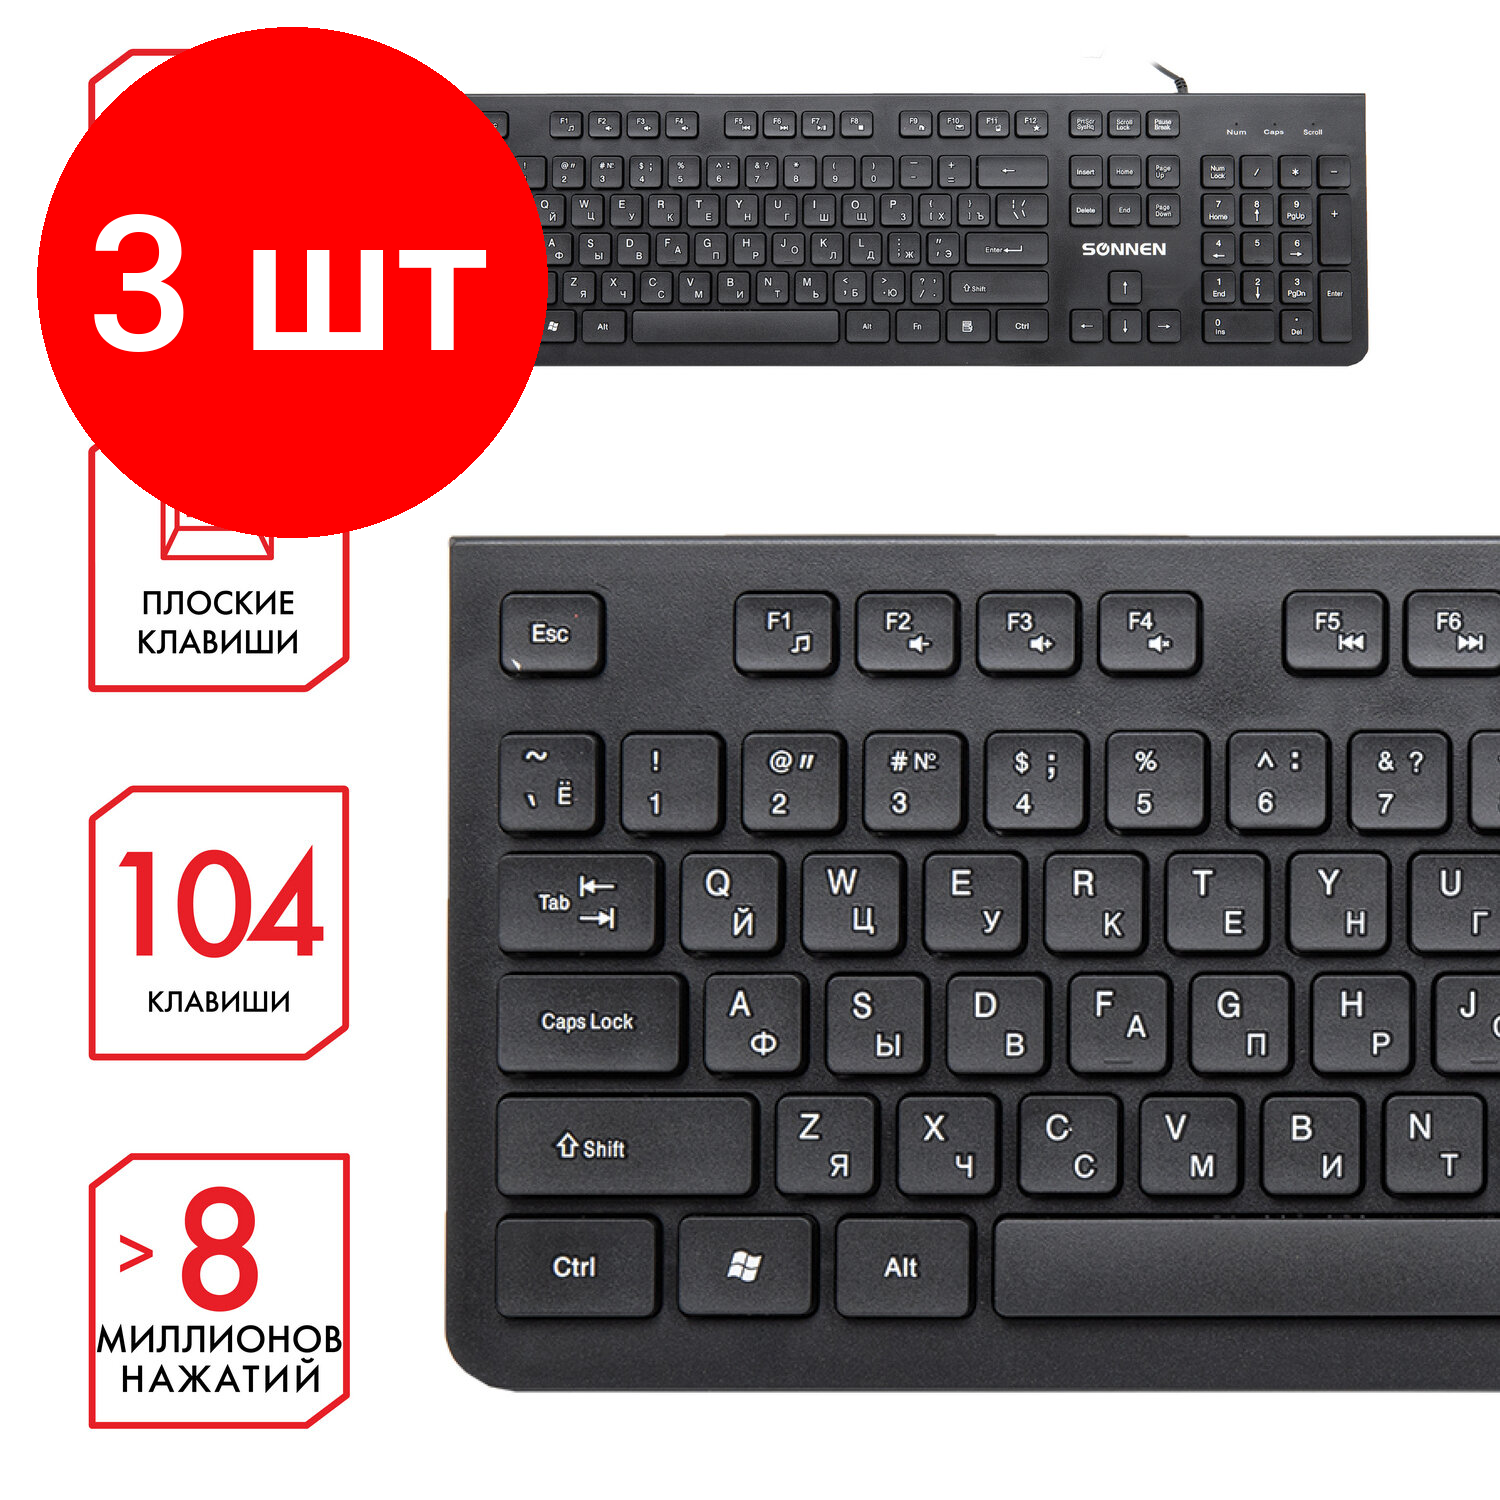 Комплект 5 шт Клавиатура проводная SONNEN KB-8280 USB104 плоские клавиши черная 513510